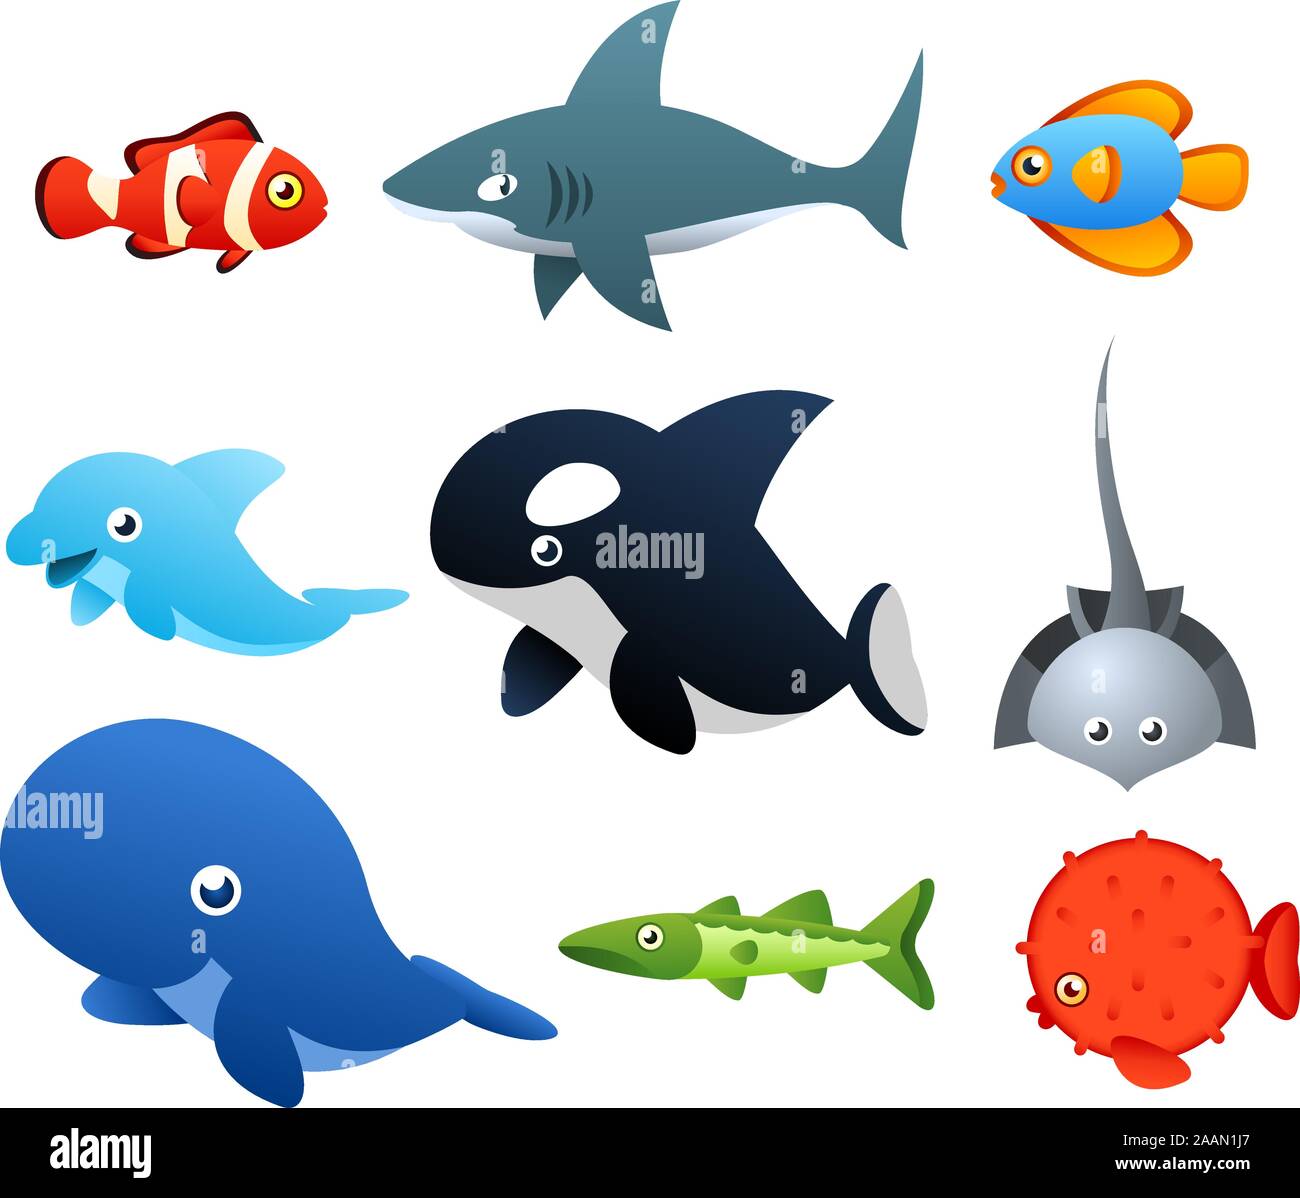 Zweiter Satz von Sea Life Ikonen, mit neun verschiedenen Meerestieren wie Fisch, Hai, Delphin, Wal-Vektor-Illustration. Stock Vektor